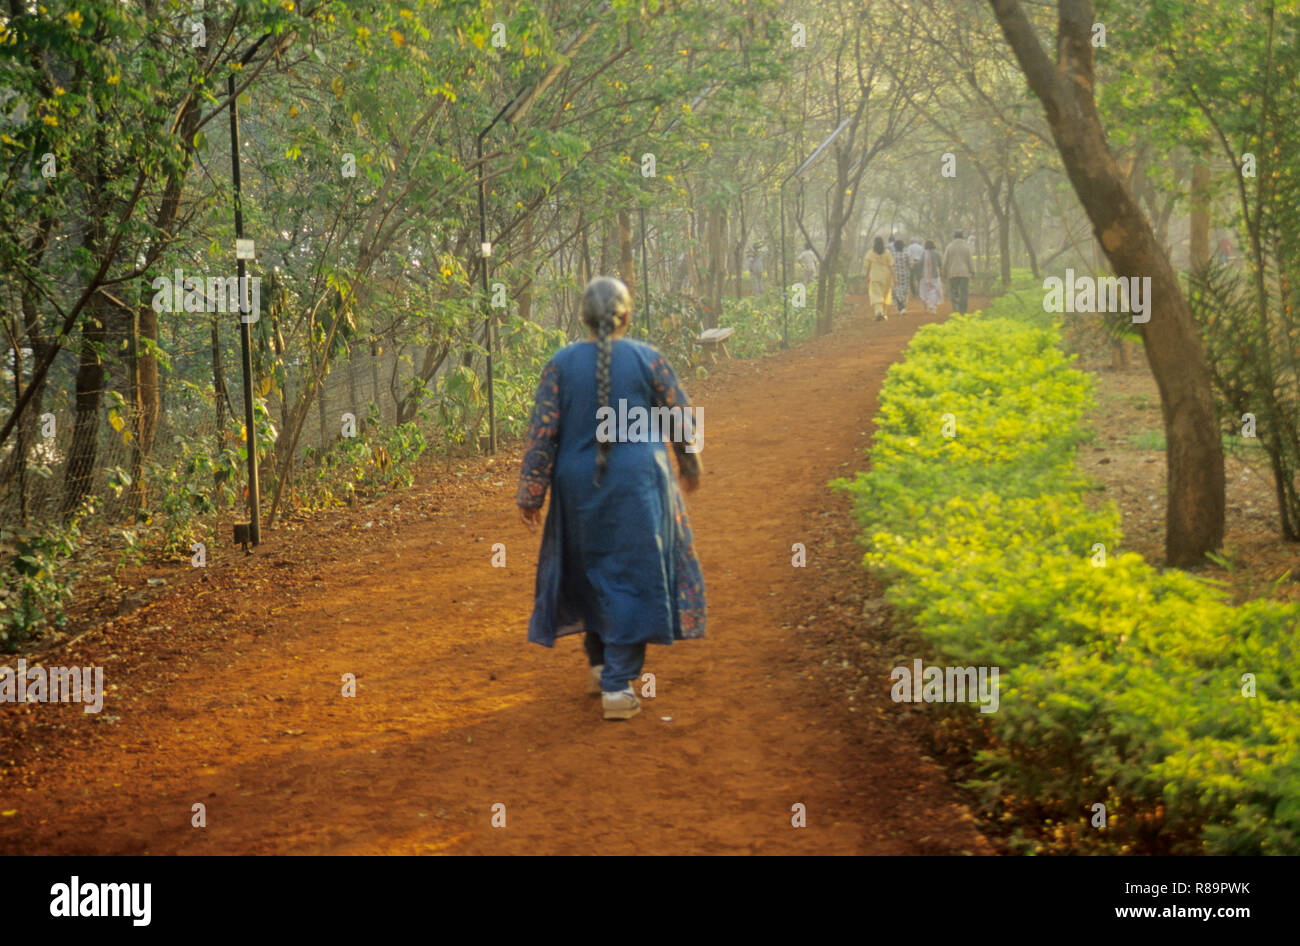 people taking morning walk, joggers park, bund garden, pune, maharashtra, india, Stock Photo